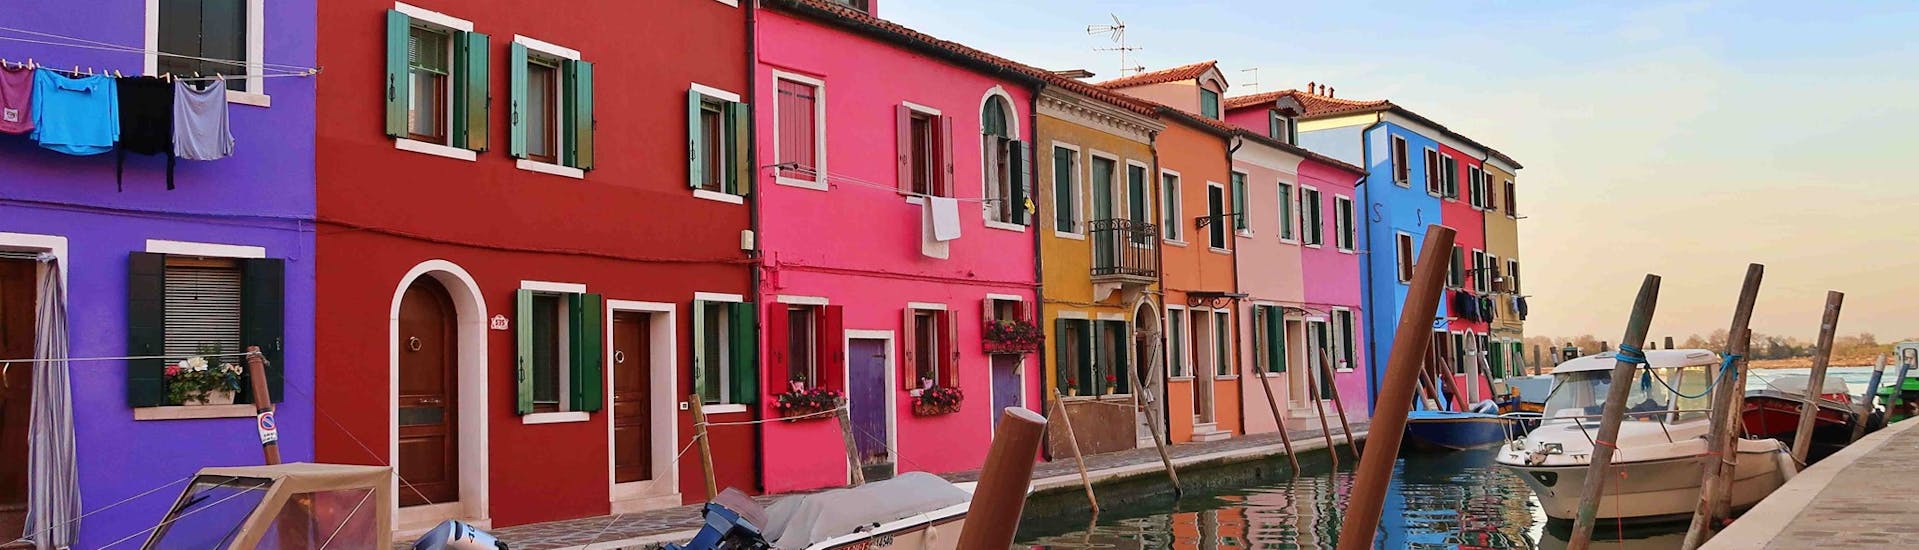 Una foto de las casas de colores, tomada en Burano durante el viaje en barco desde Punta Sabbioni a Murano, Burano y Torcello, con Il Doge di Venezia.